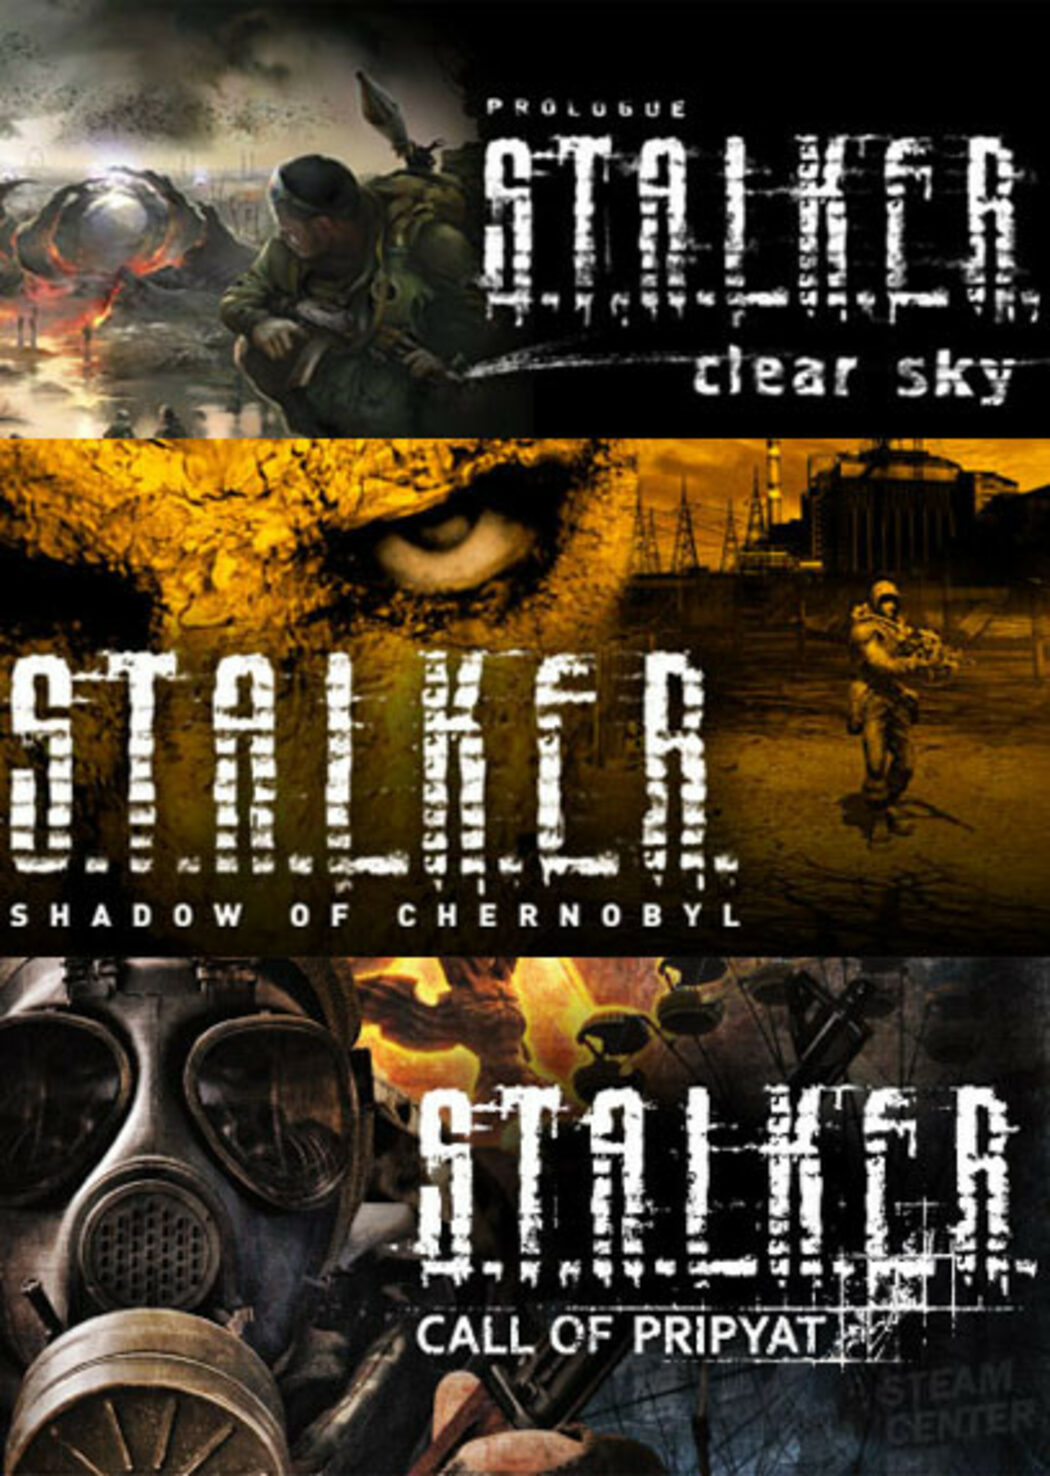 buy S.T.A.L.K.E.R.: Clear Sky Cd Key Steam Global